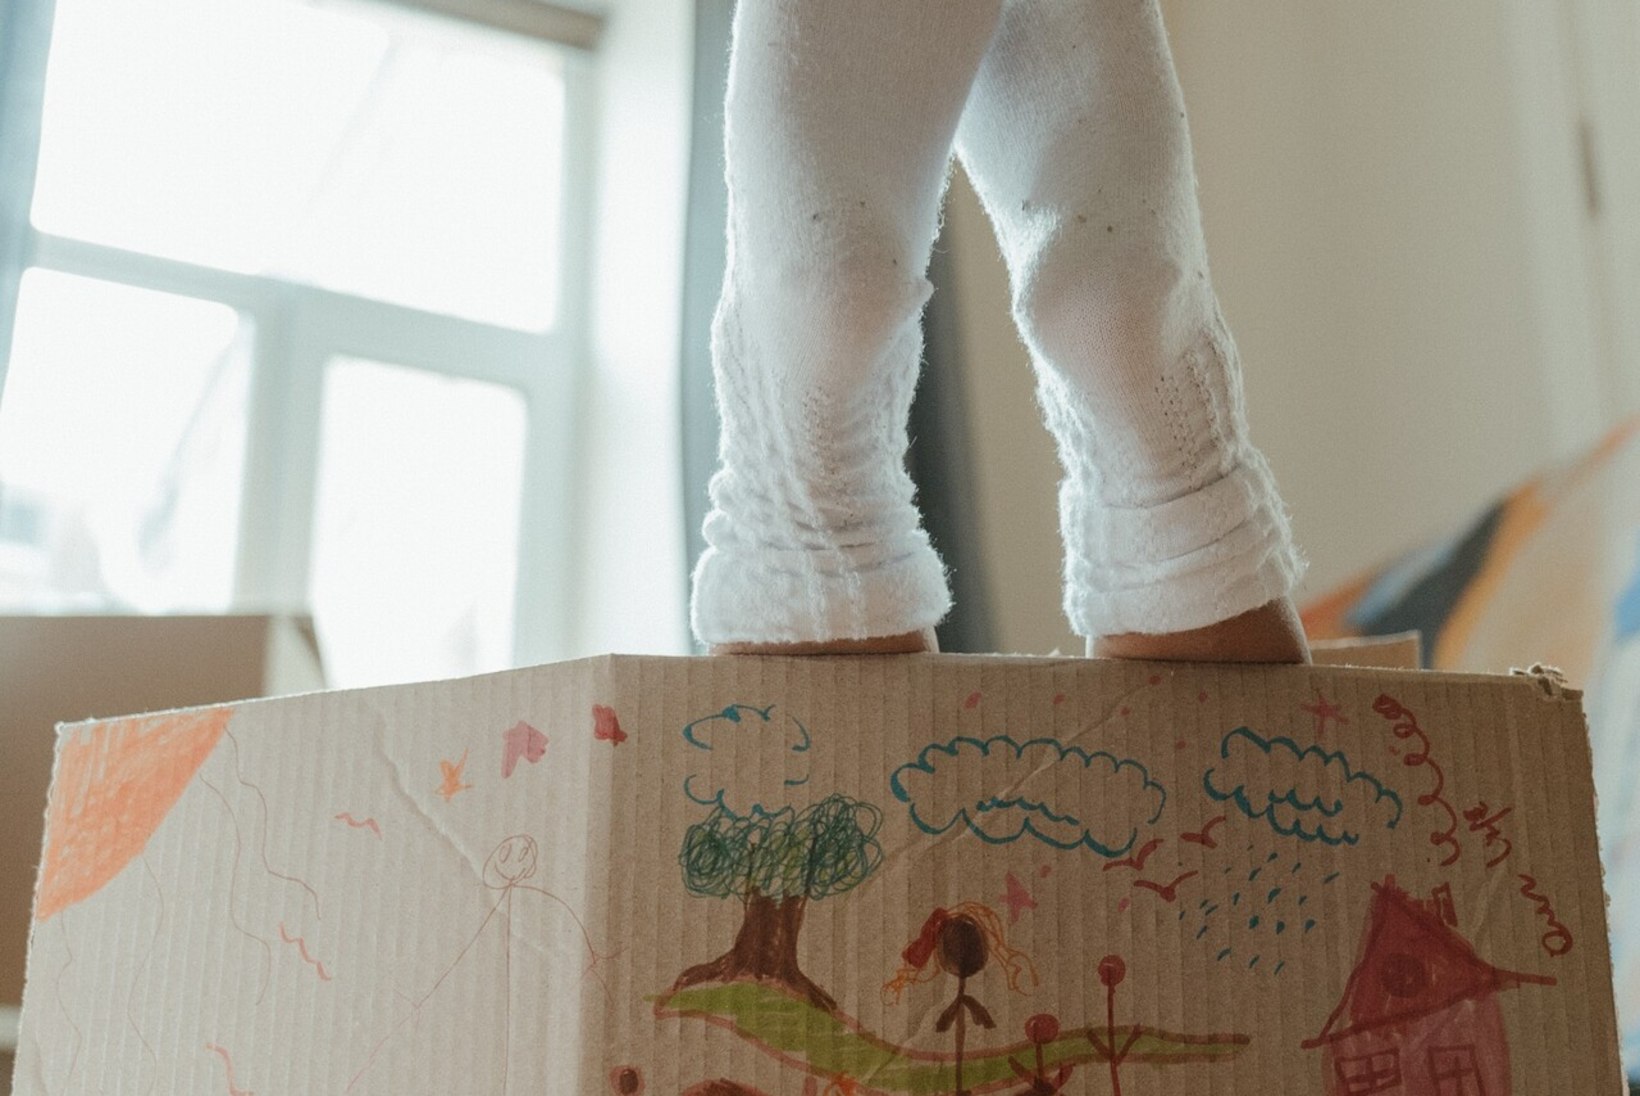 Kuidas jagada lapsi, kui üks vanem on püstihull? Pereterapeut: vanemate ebaküps käitumine laastab lapse hinge